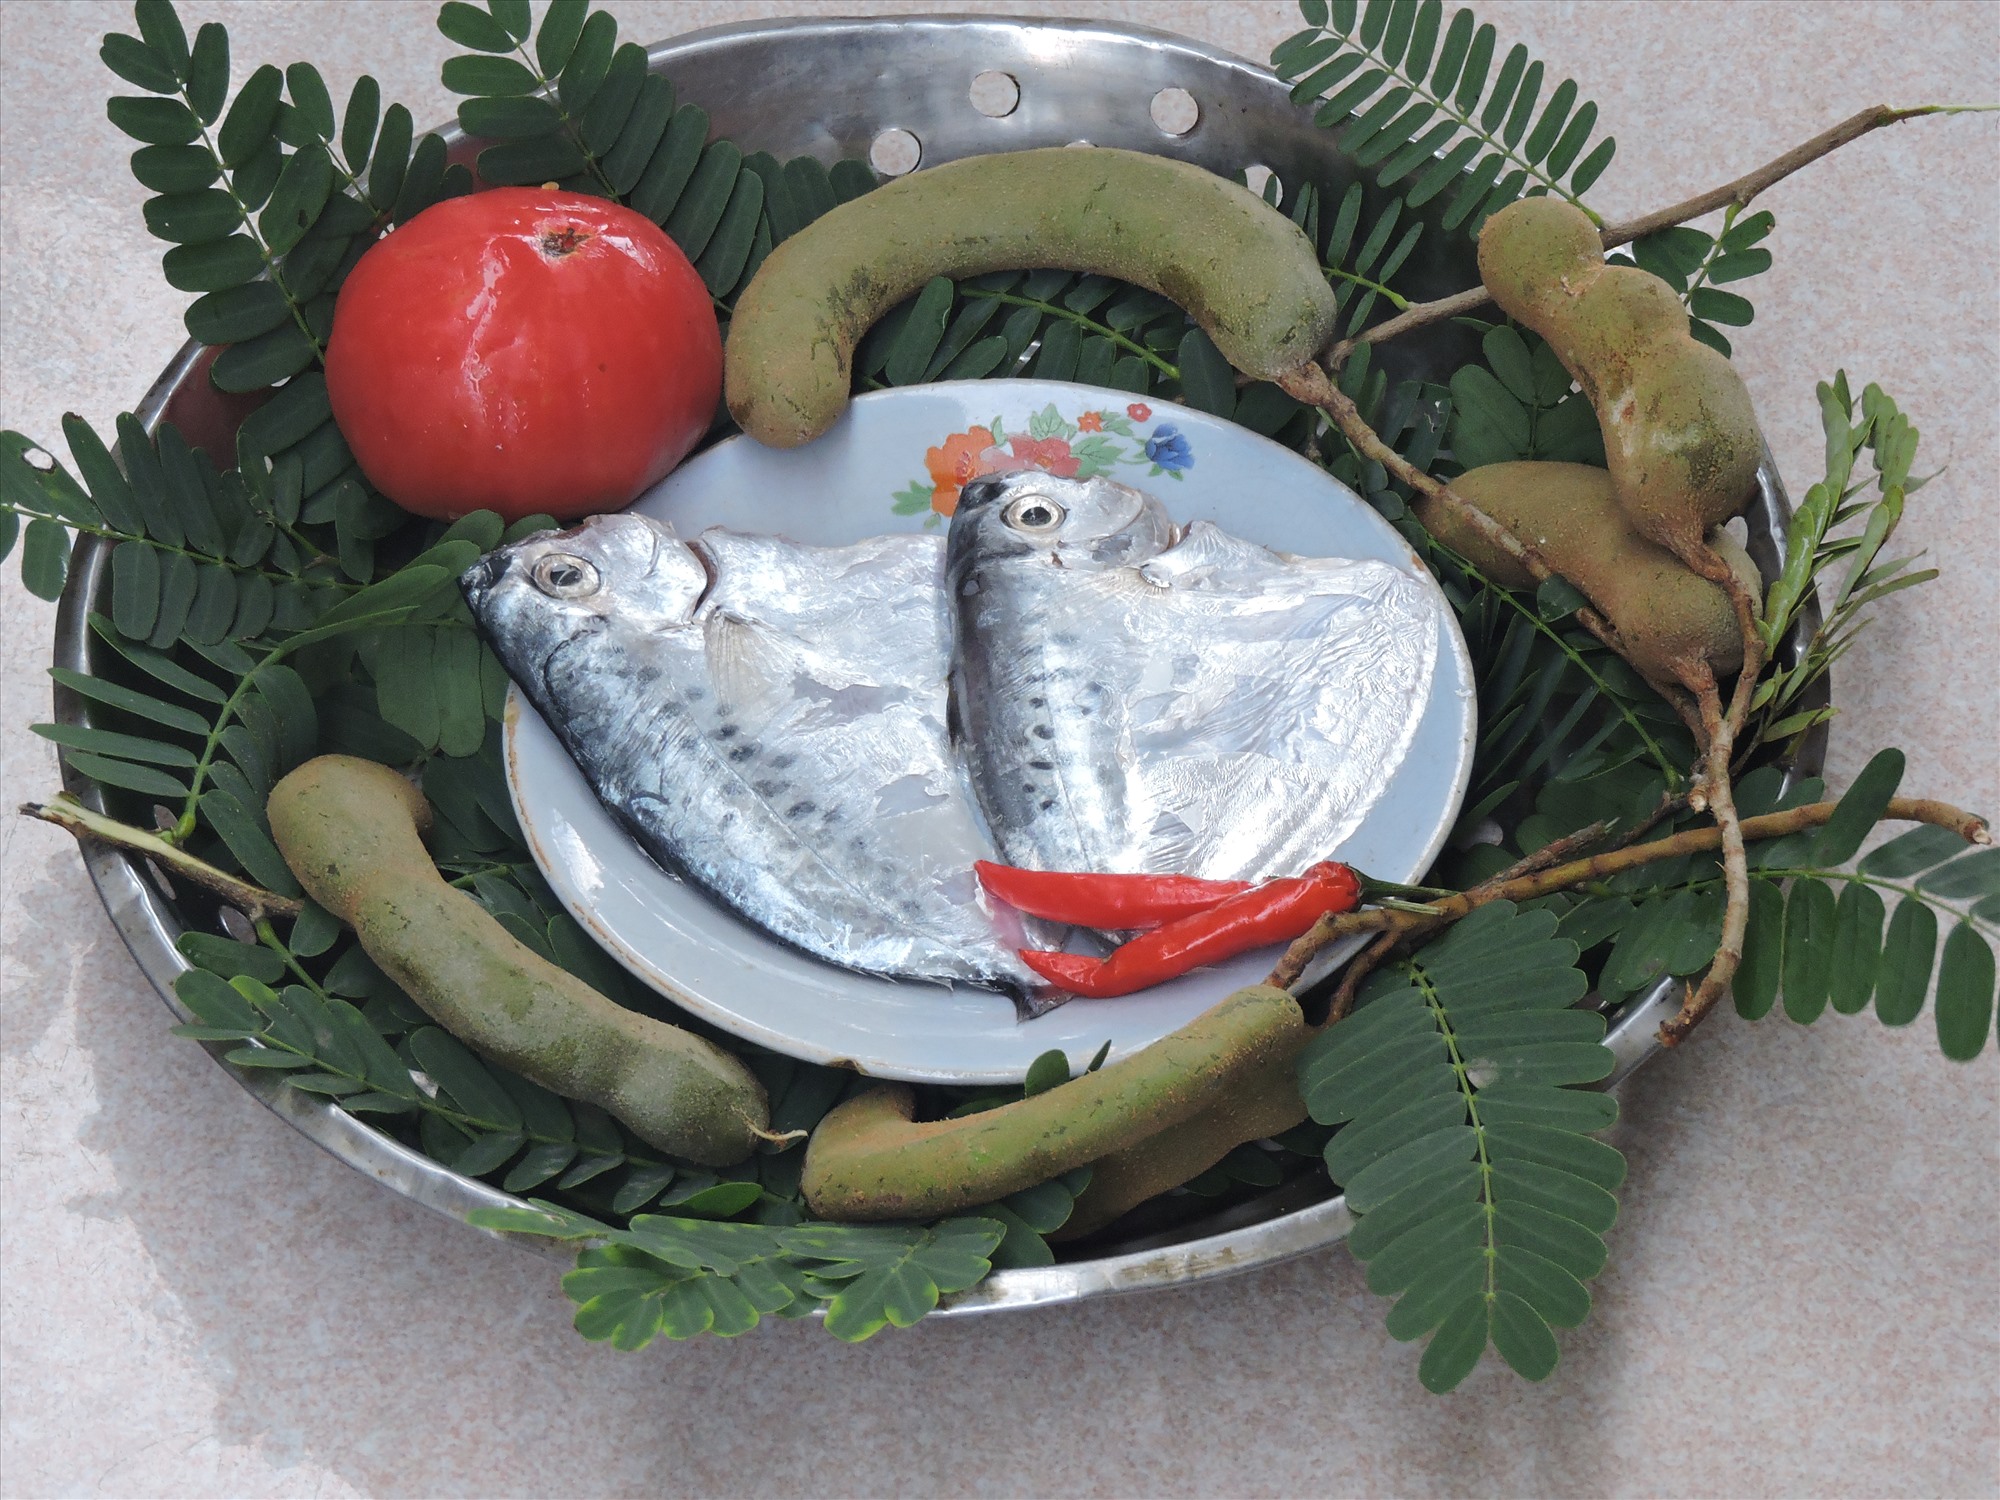 Quảng Nam: Cá bánh lái là loại cá gì mà chế biến kiểu gì cũng ngon, đem nấu với lá me chua thành "cực phẩm"